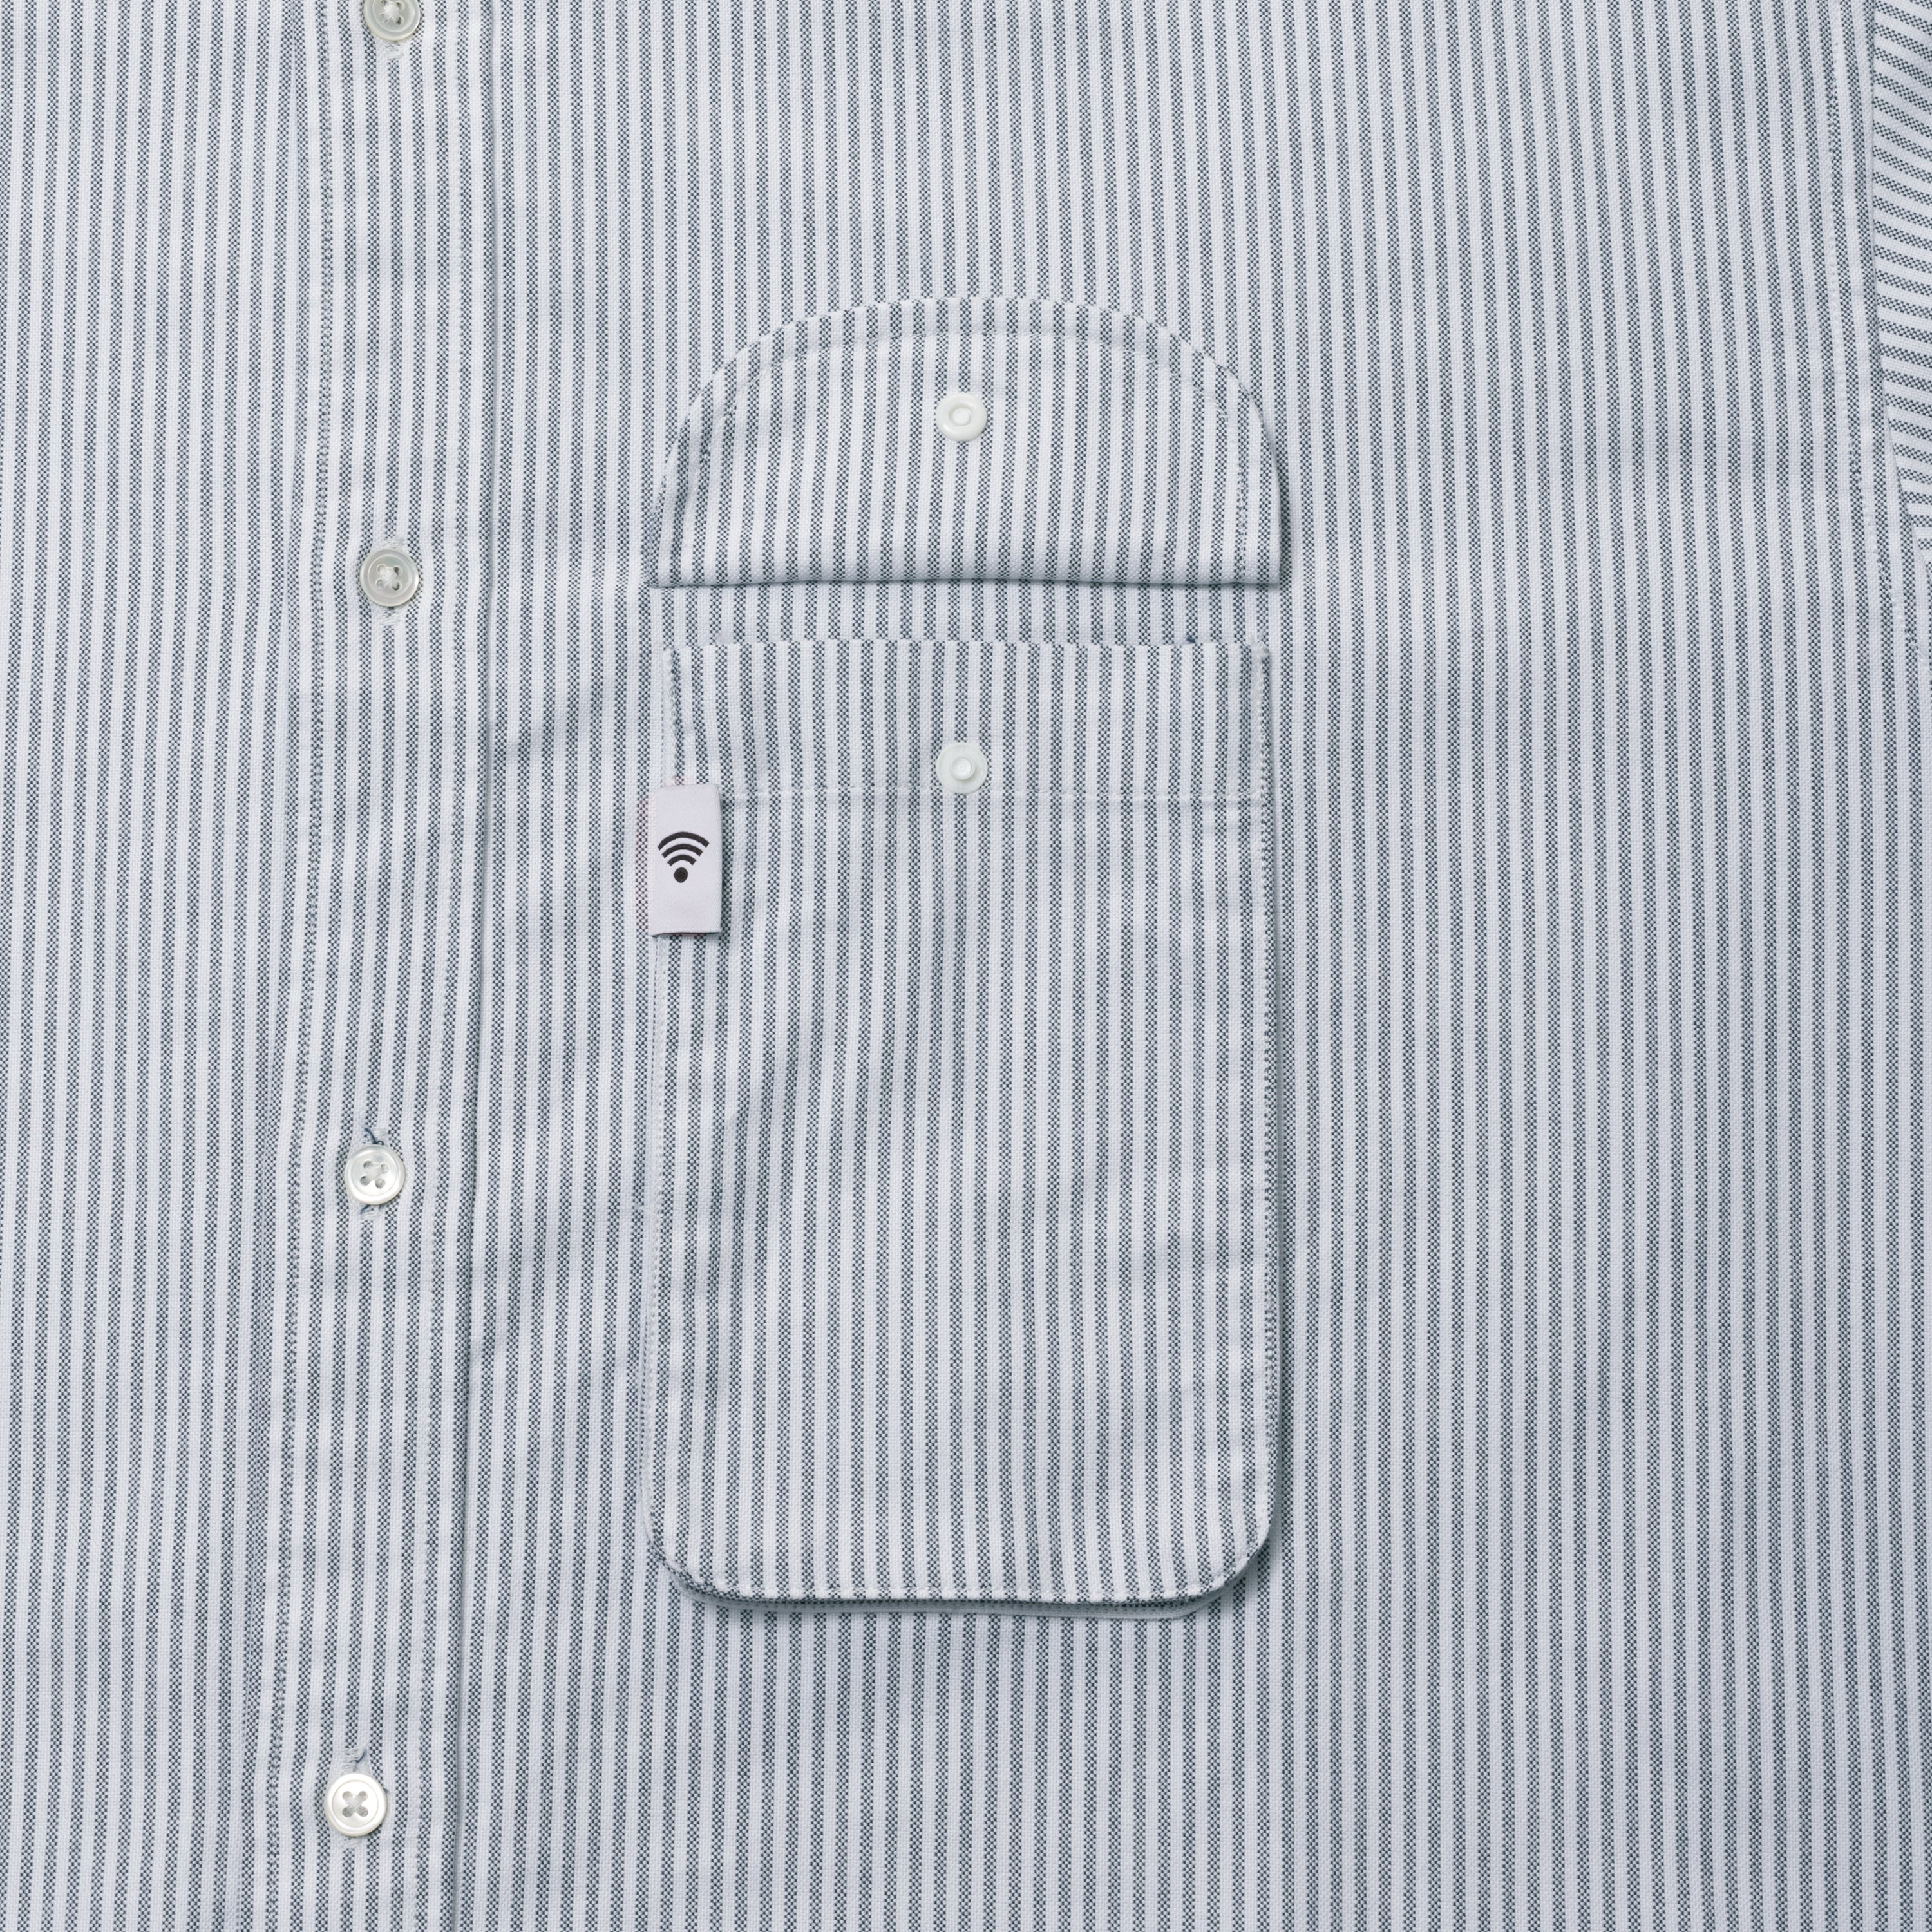 Cellphone Pocket Oxford Button Down Shirts[WHITE×BLACK]